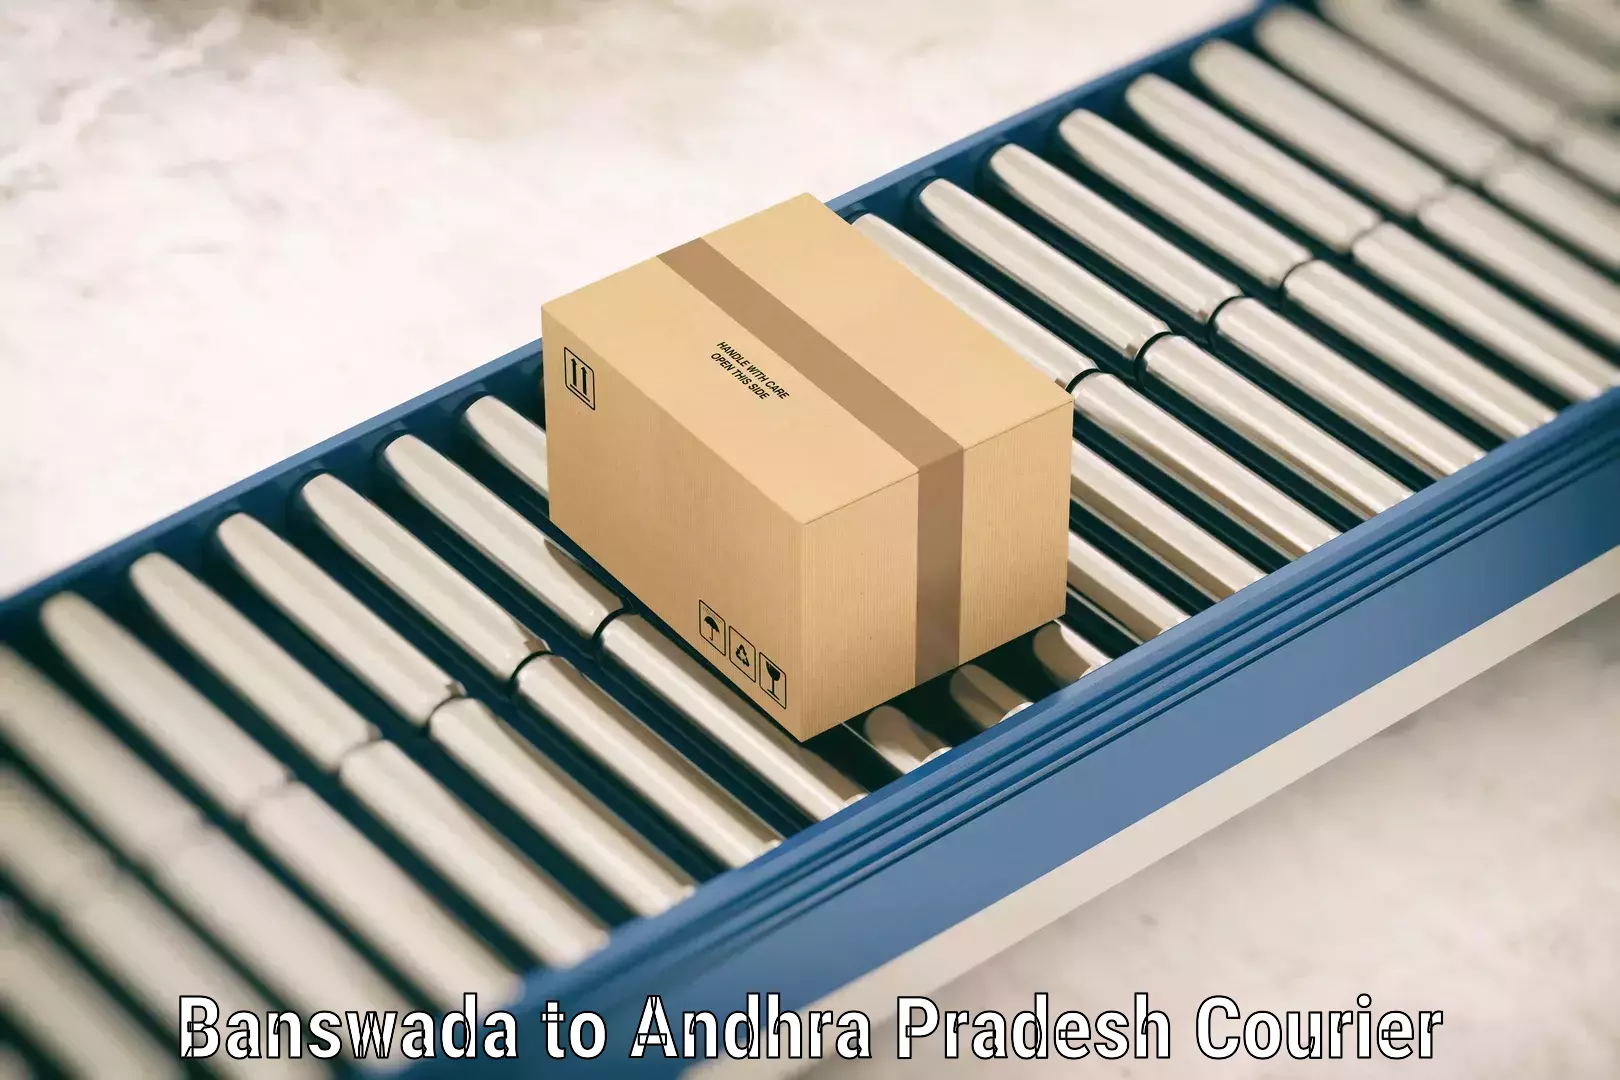 Luggage delivery optimization Banswada to Gokavaram